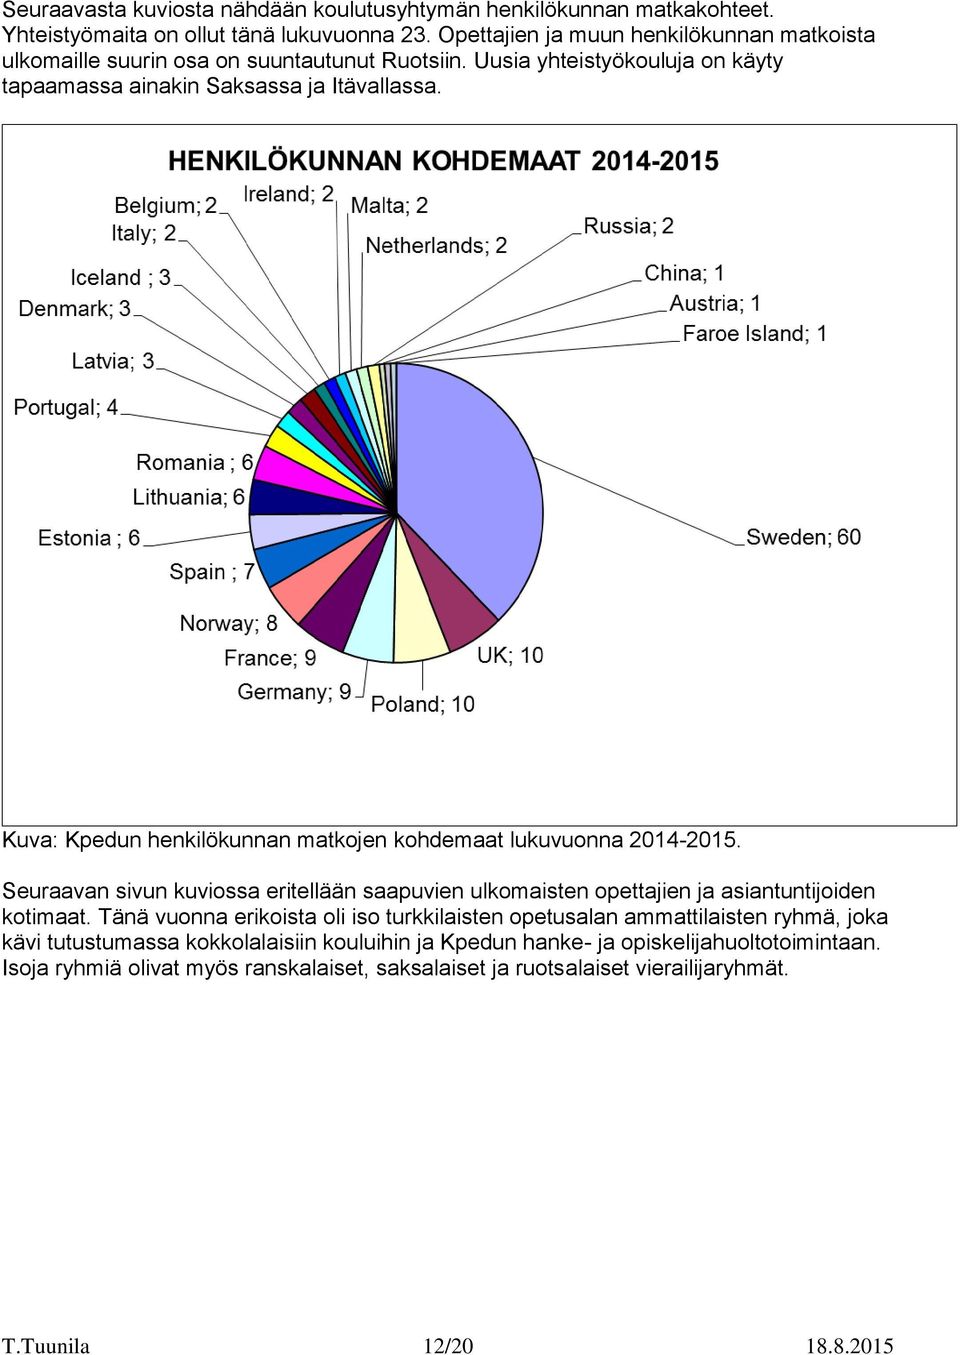 Kuva: Kpedun henkilökunnan matkojen kohdemaat lukuvuonna 2014-2015. Seuraavan sivun kuviossa eritellään saapuvien ulkomaisten opettajien ja asiantuntijoiden kotimaat.